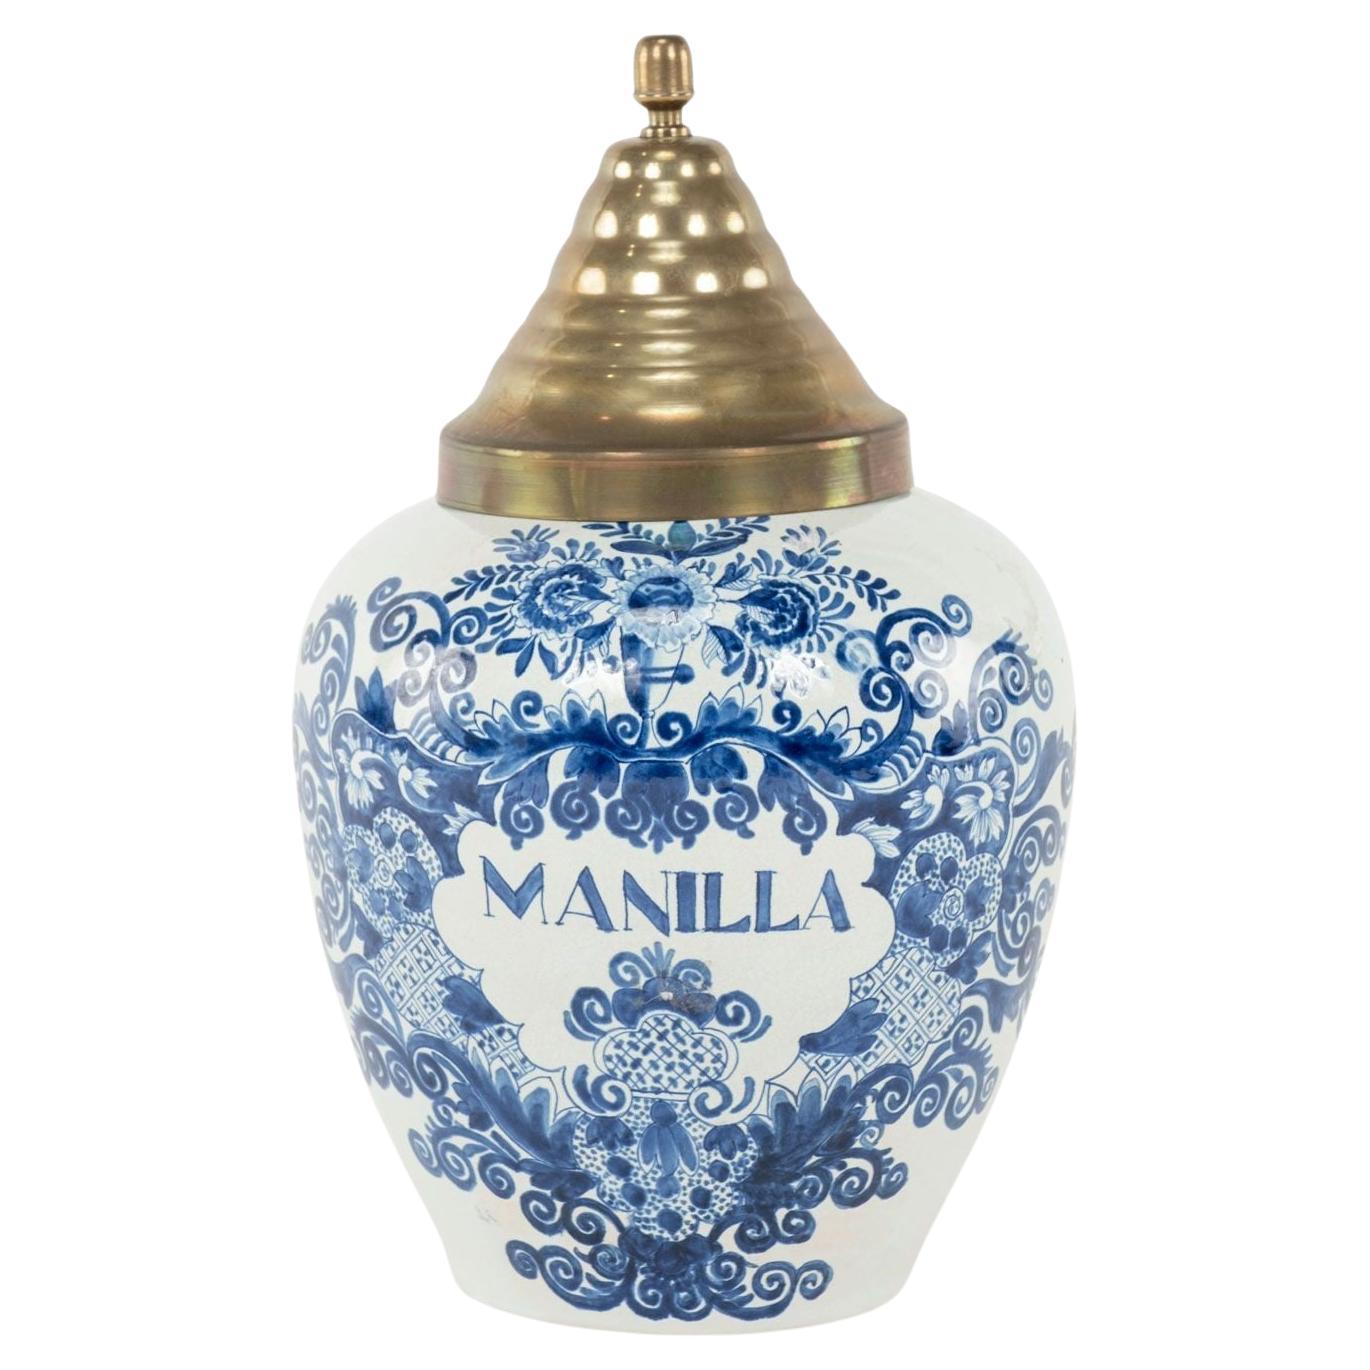 Delft Blue and White "Manilla" Tobacco Jar For Sale